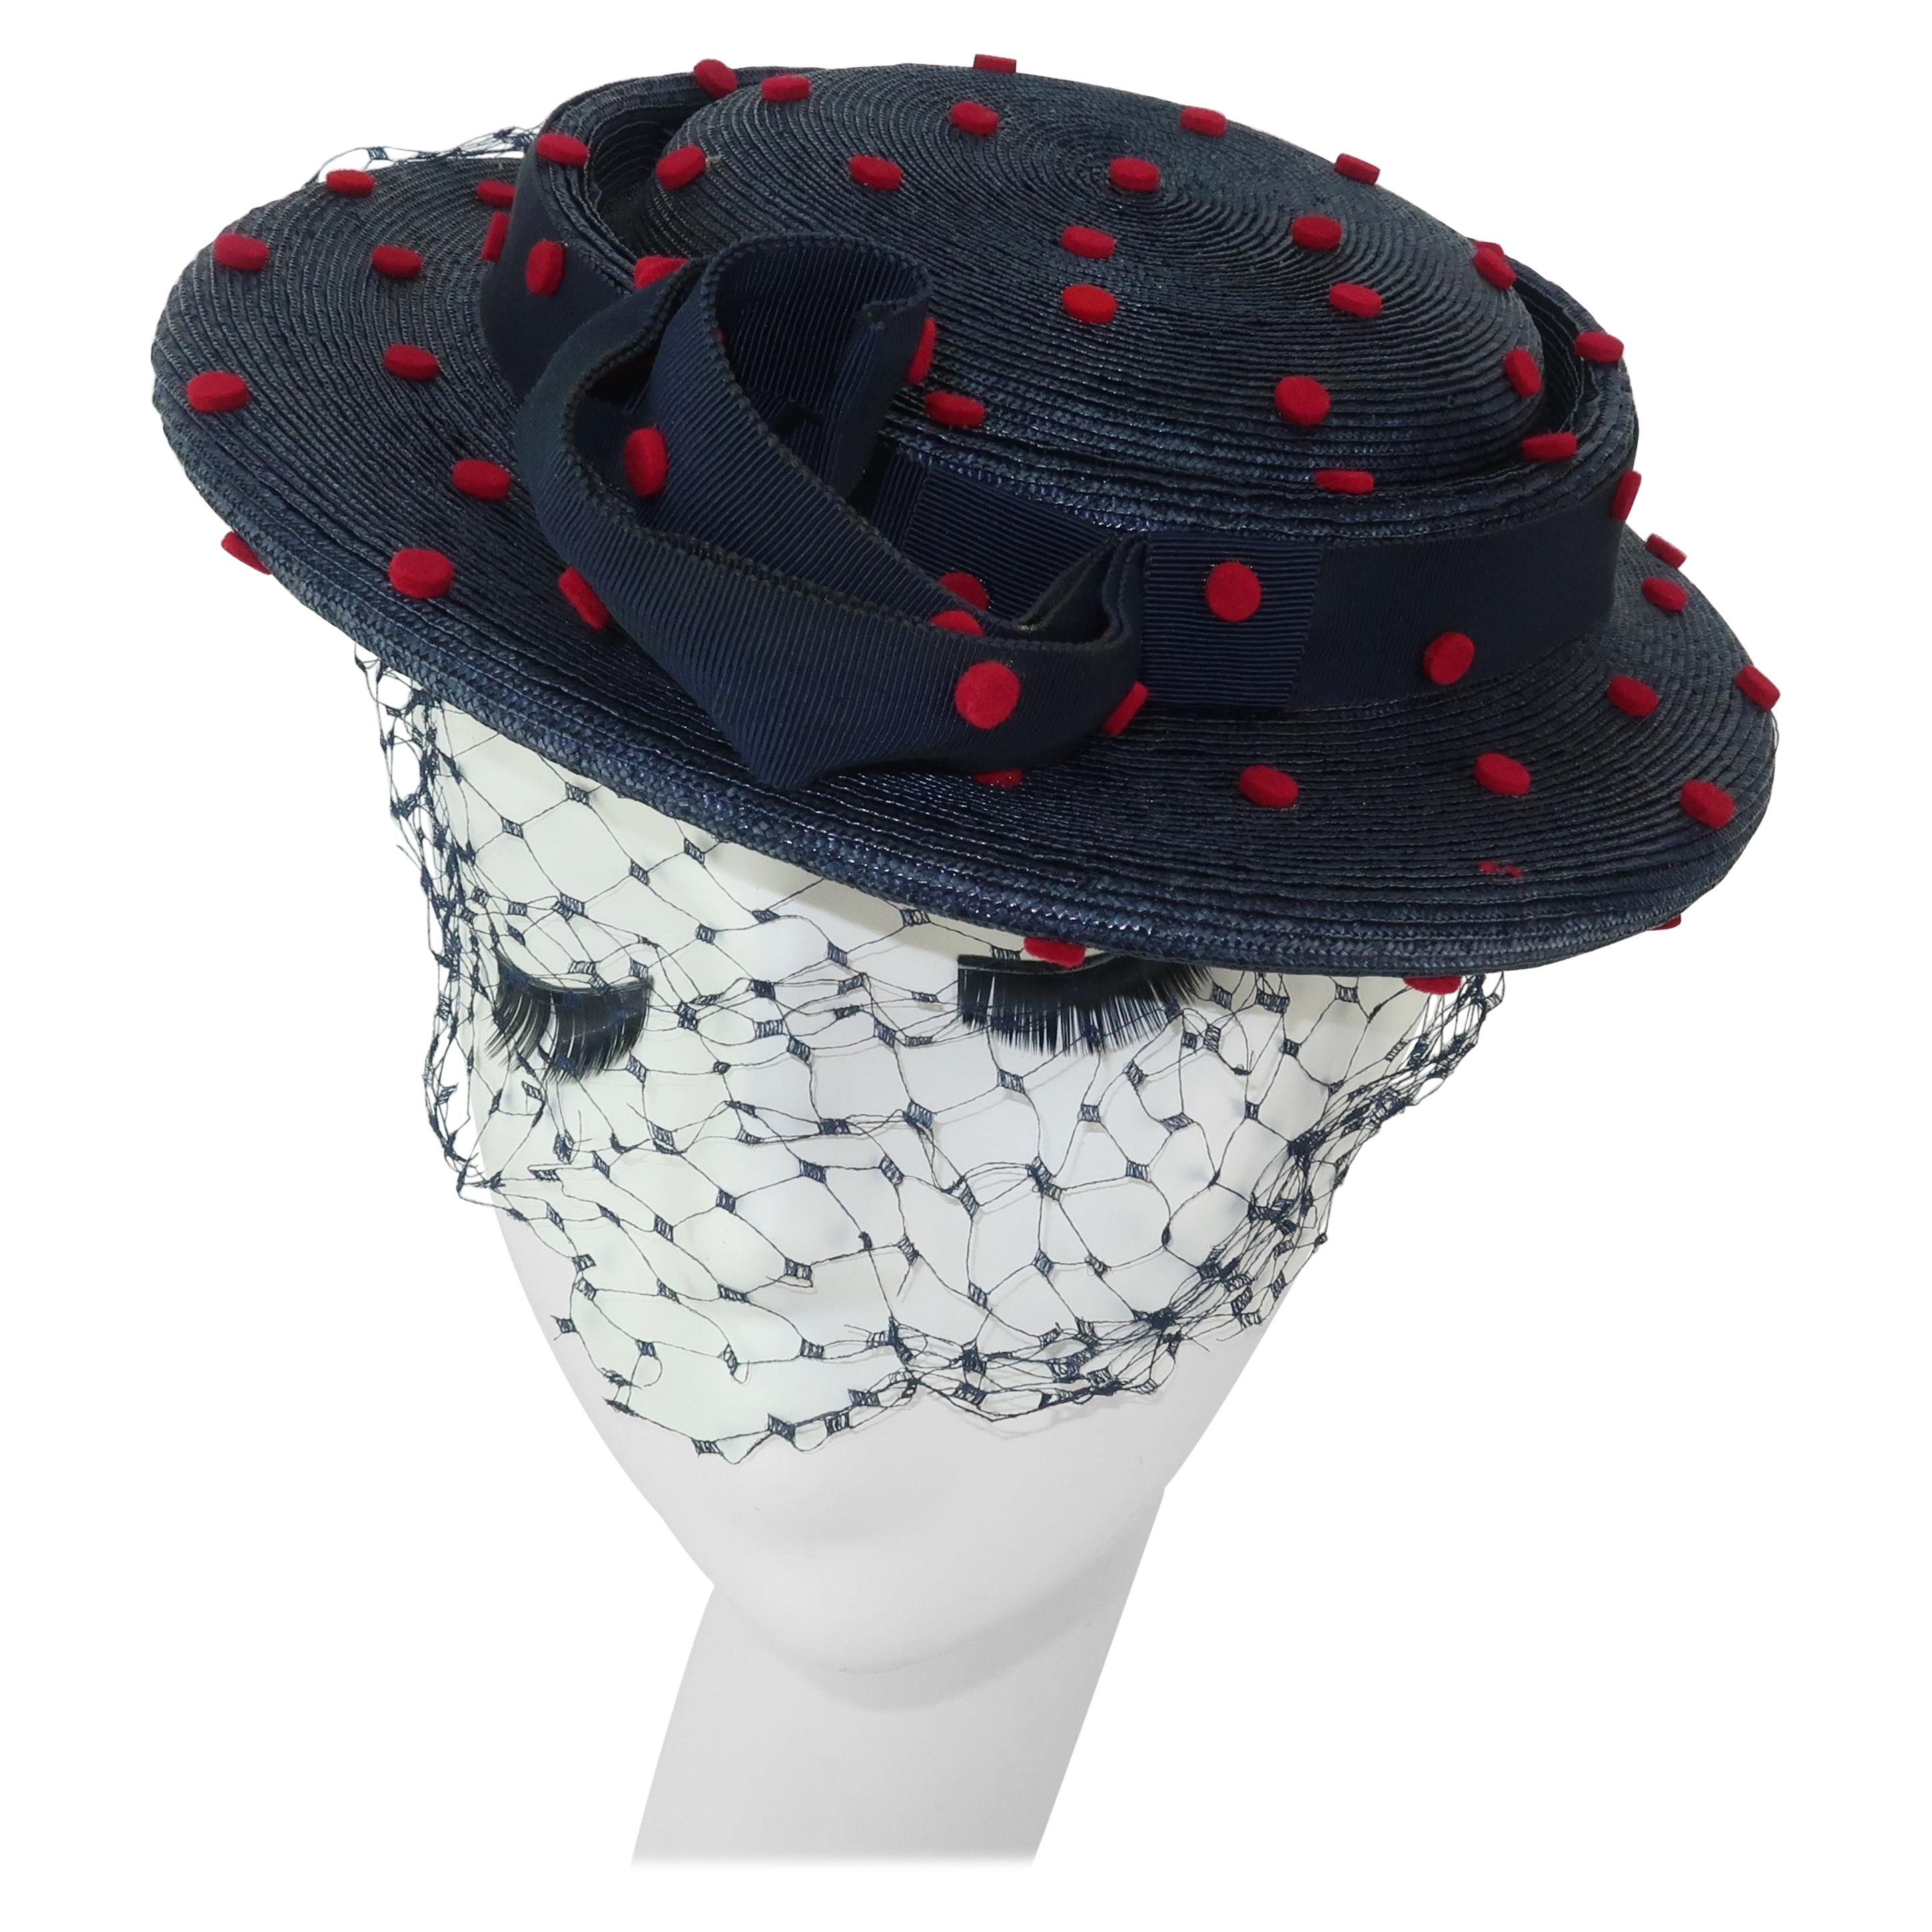 Navy Blue & Red Polka Dot Straw Hat, C.1950